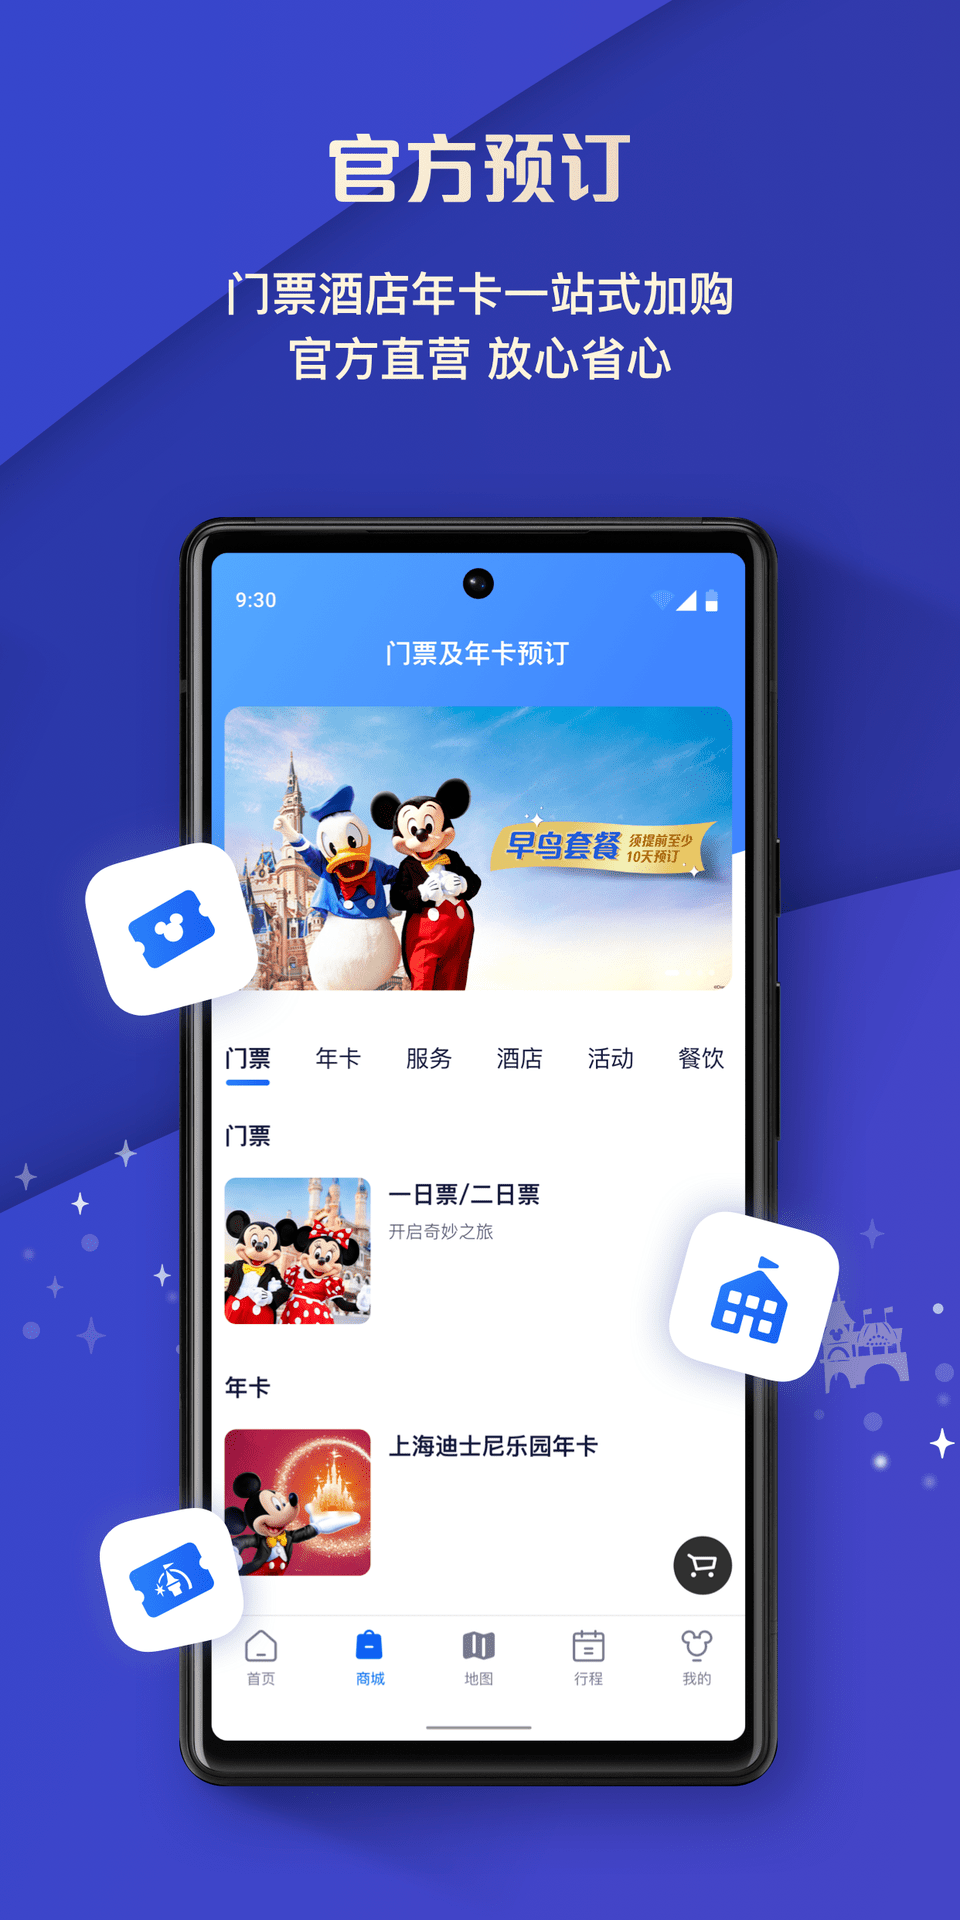 上海迪士尼度假区 v11.5.0 安卓版2